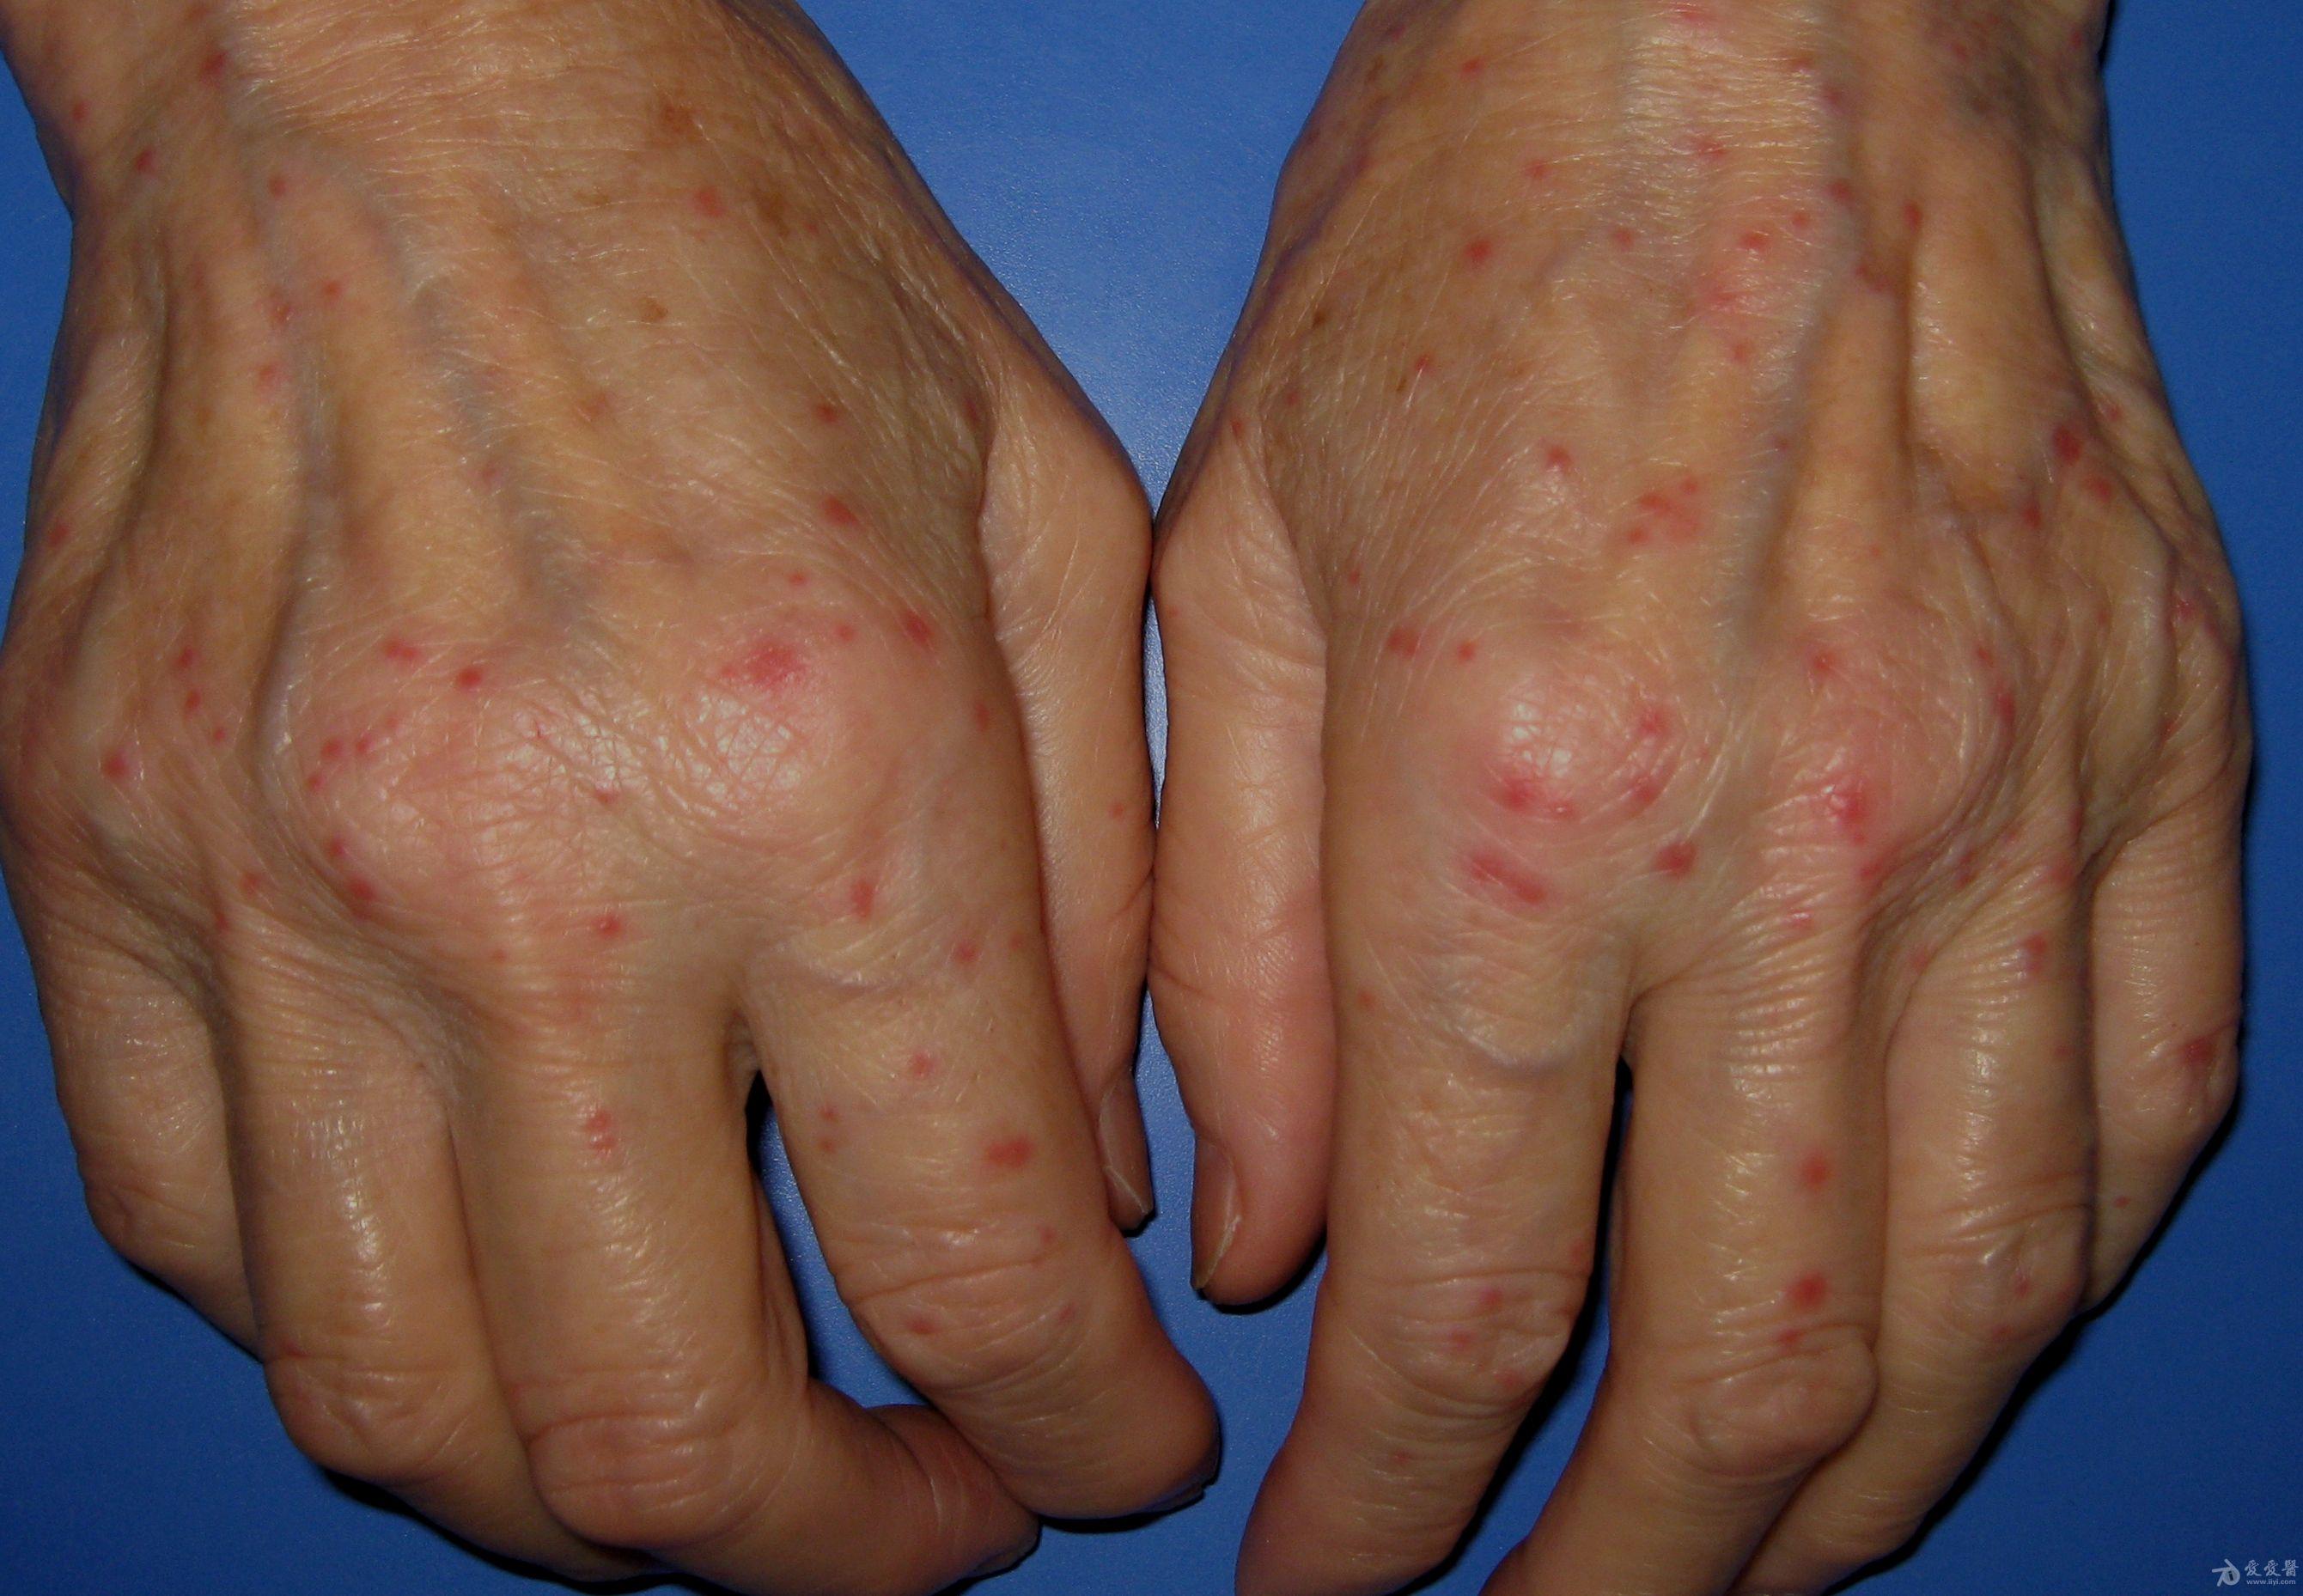 常见手部皮肤病8例